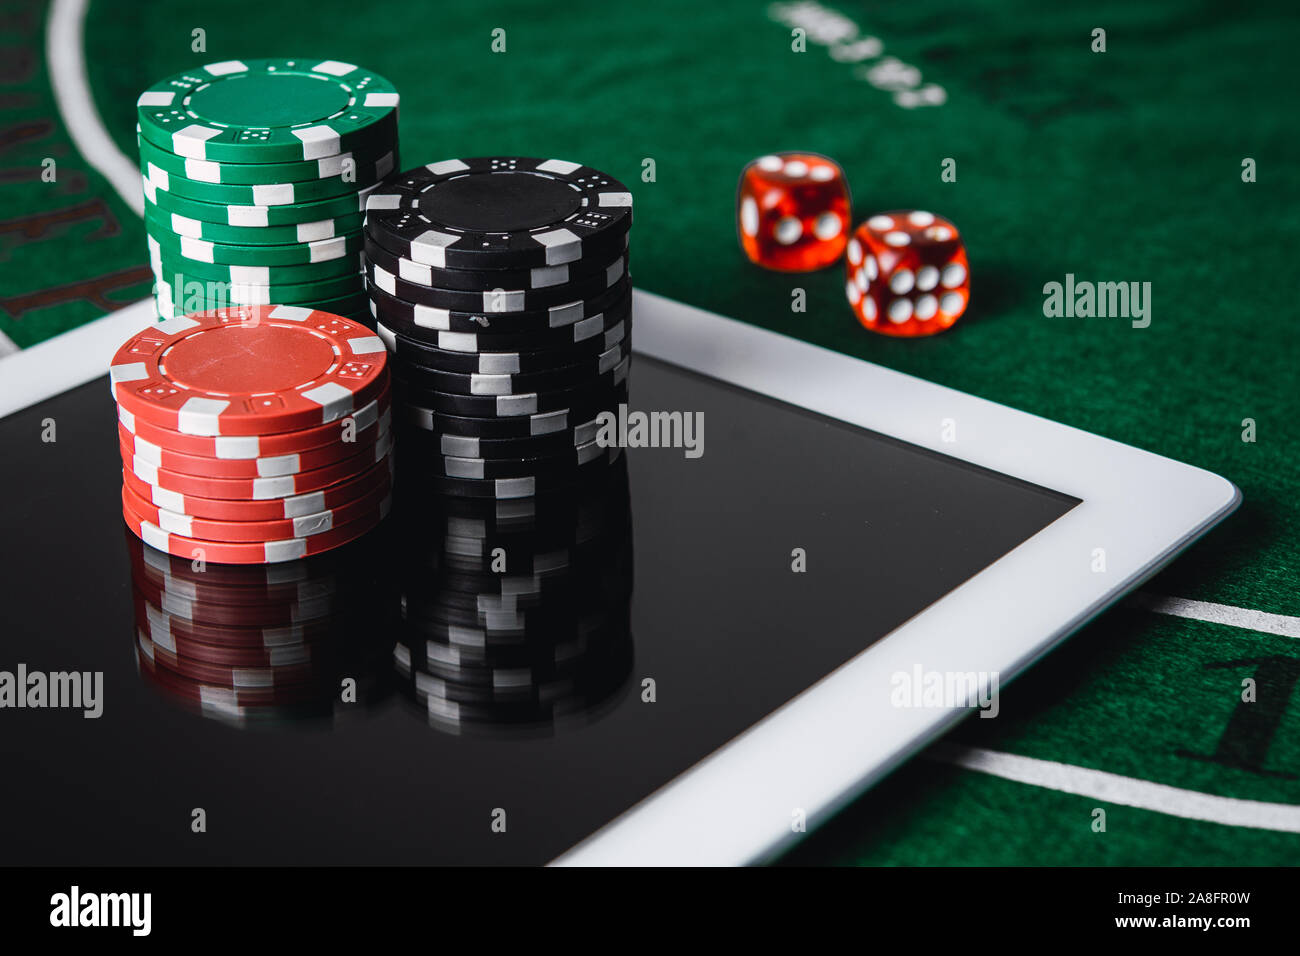 10 unbestreitbare Fakten über roulette online spielen